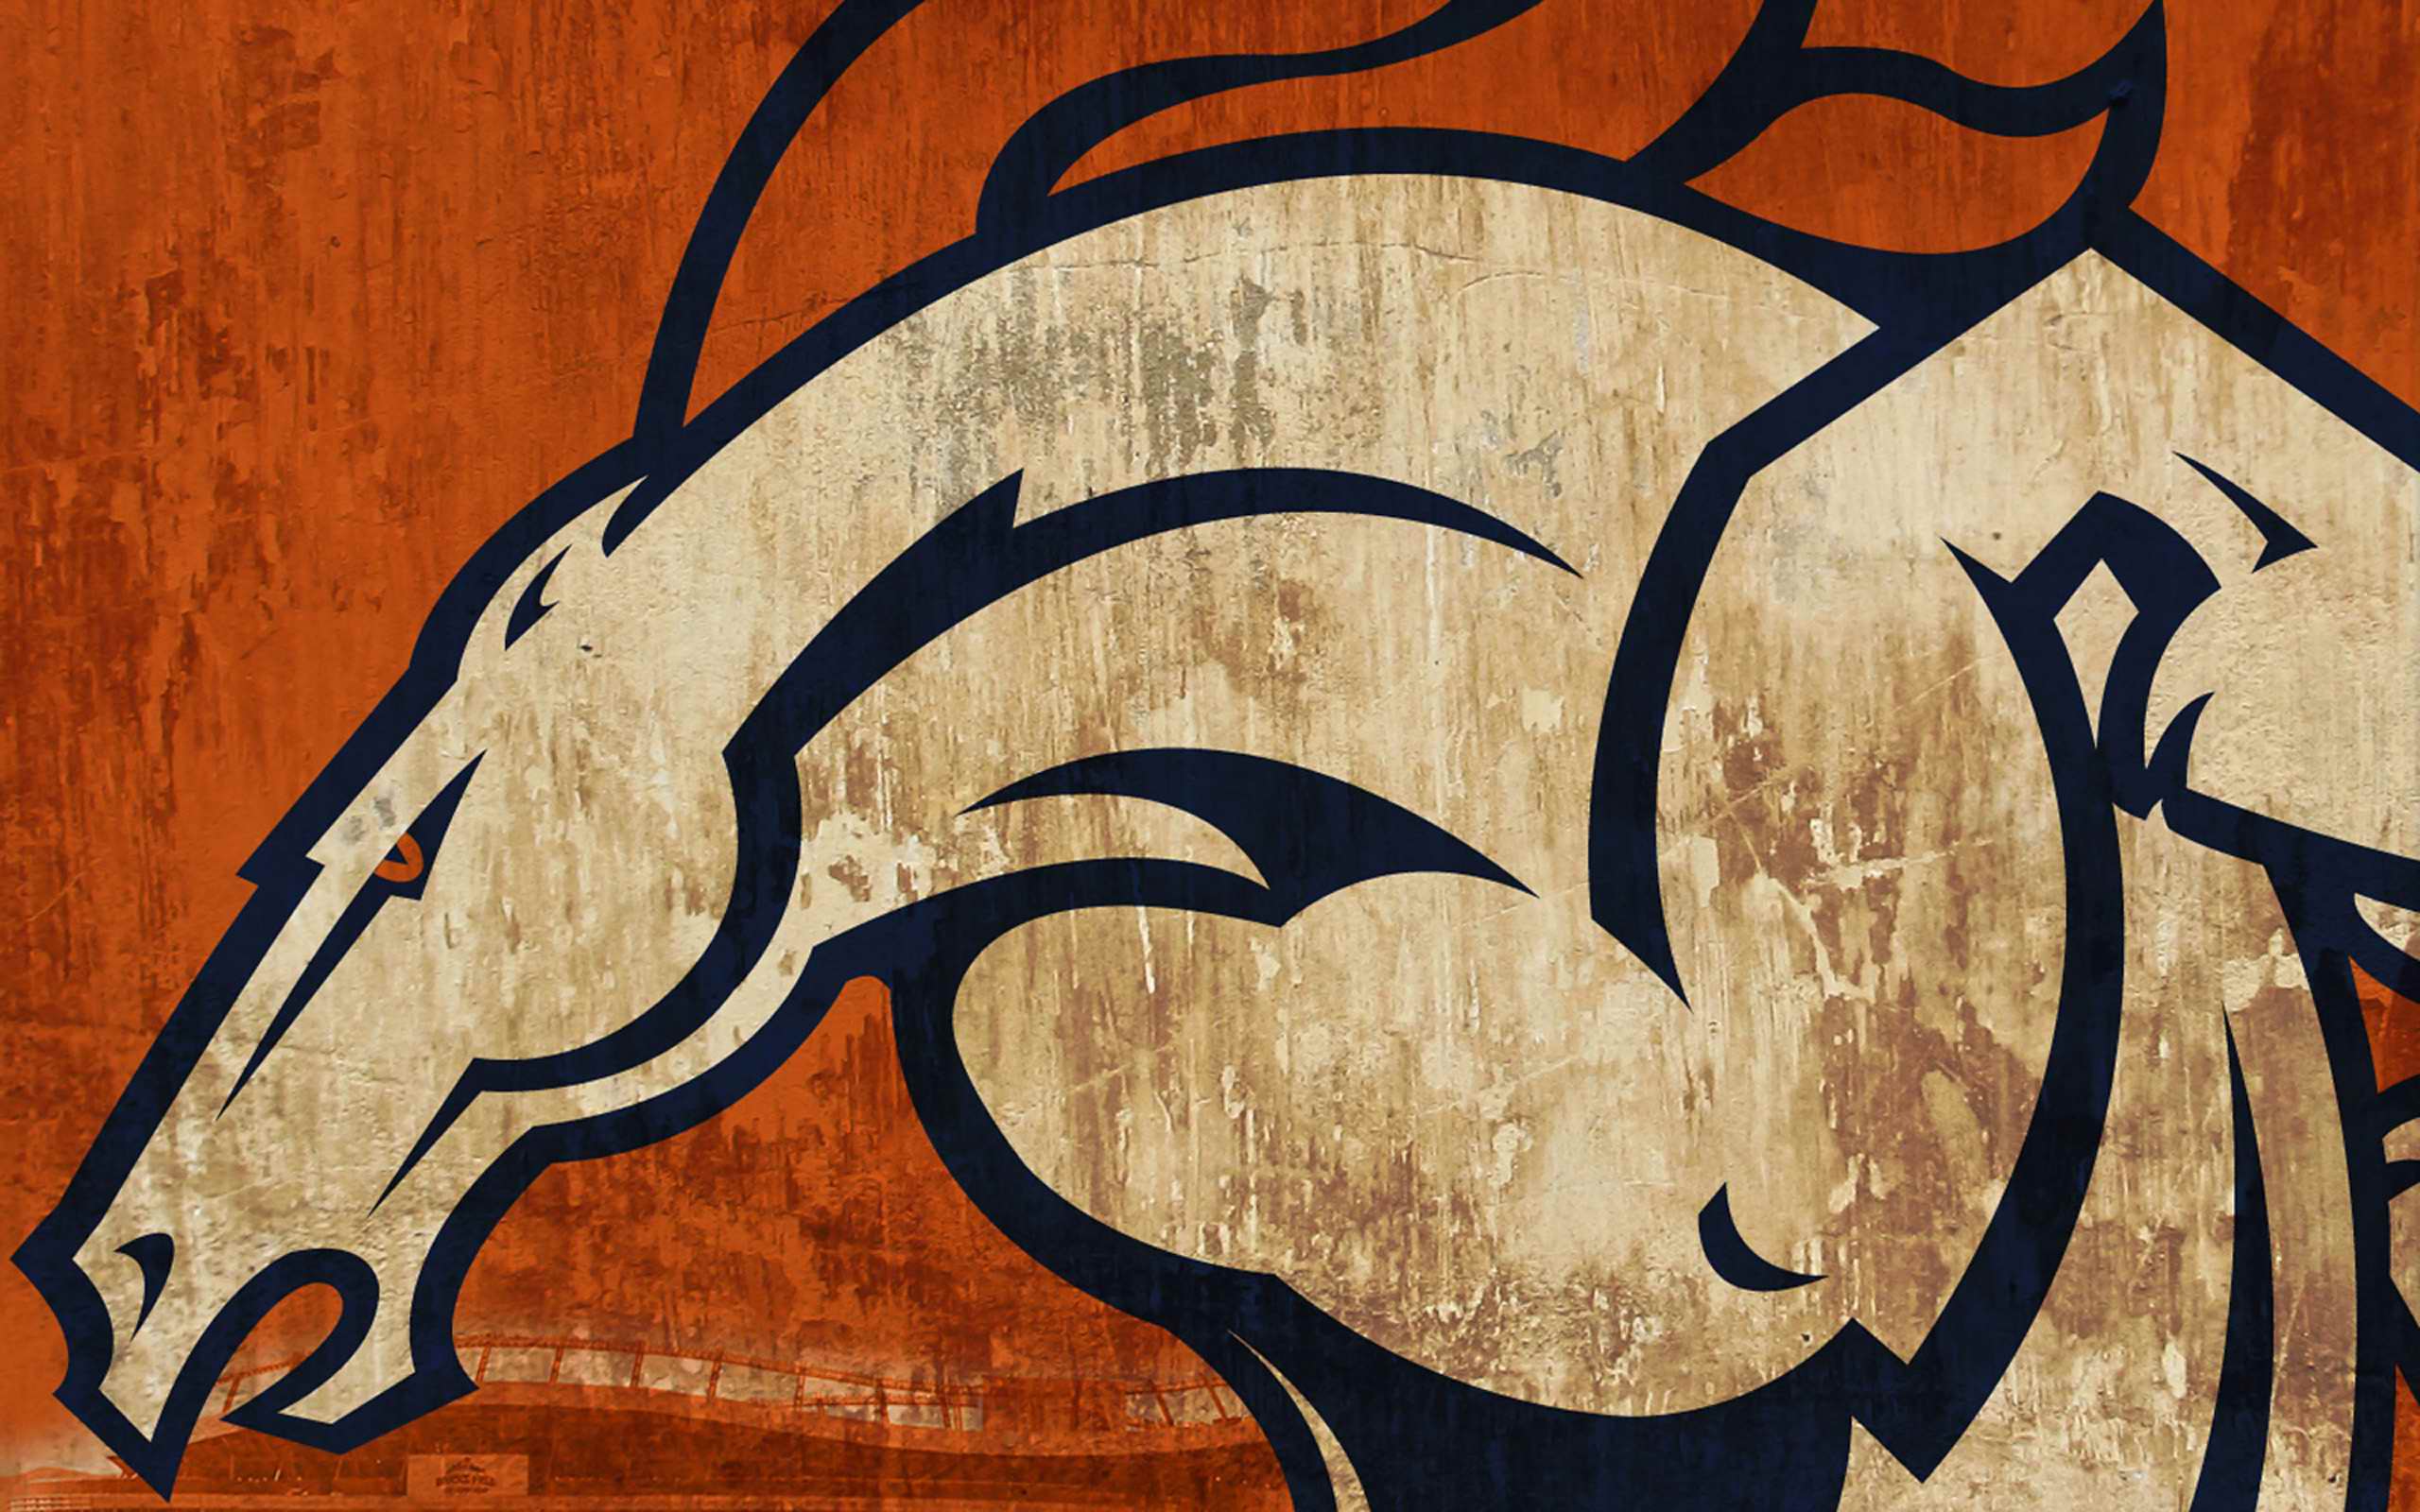 Denver Broncos Logo Wallpaper | Wallpapers, Backgrounds, Images ...